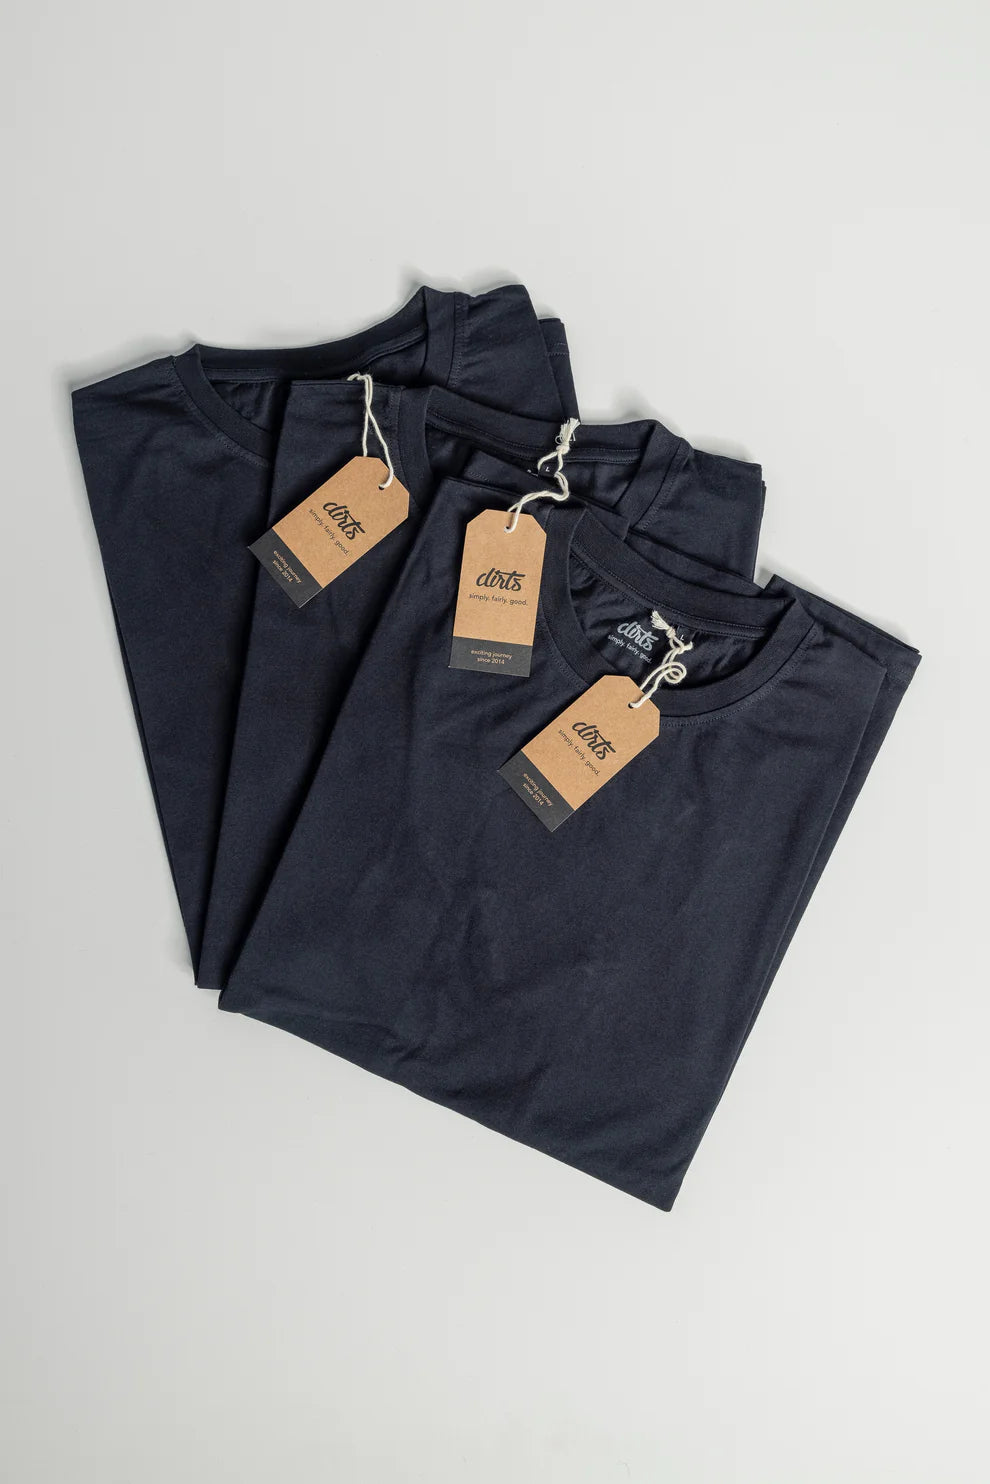 3er-Pack Premium Blank T-shirt STANDARD in schwarz aus Bio Baumwolle von DIRTS